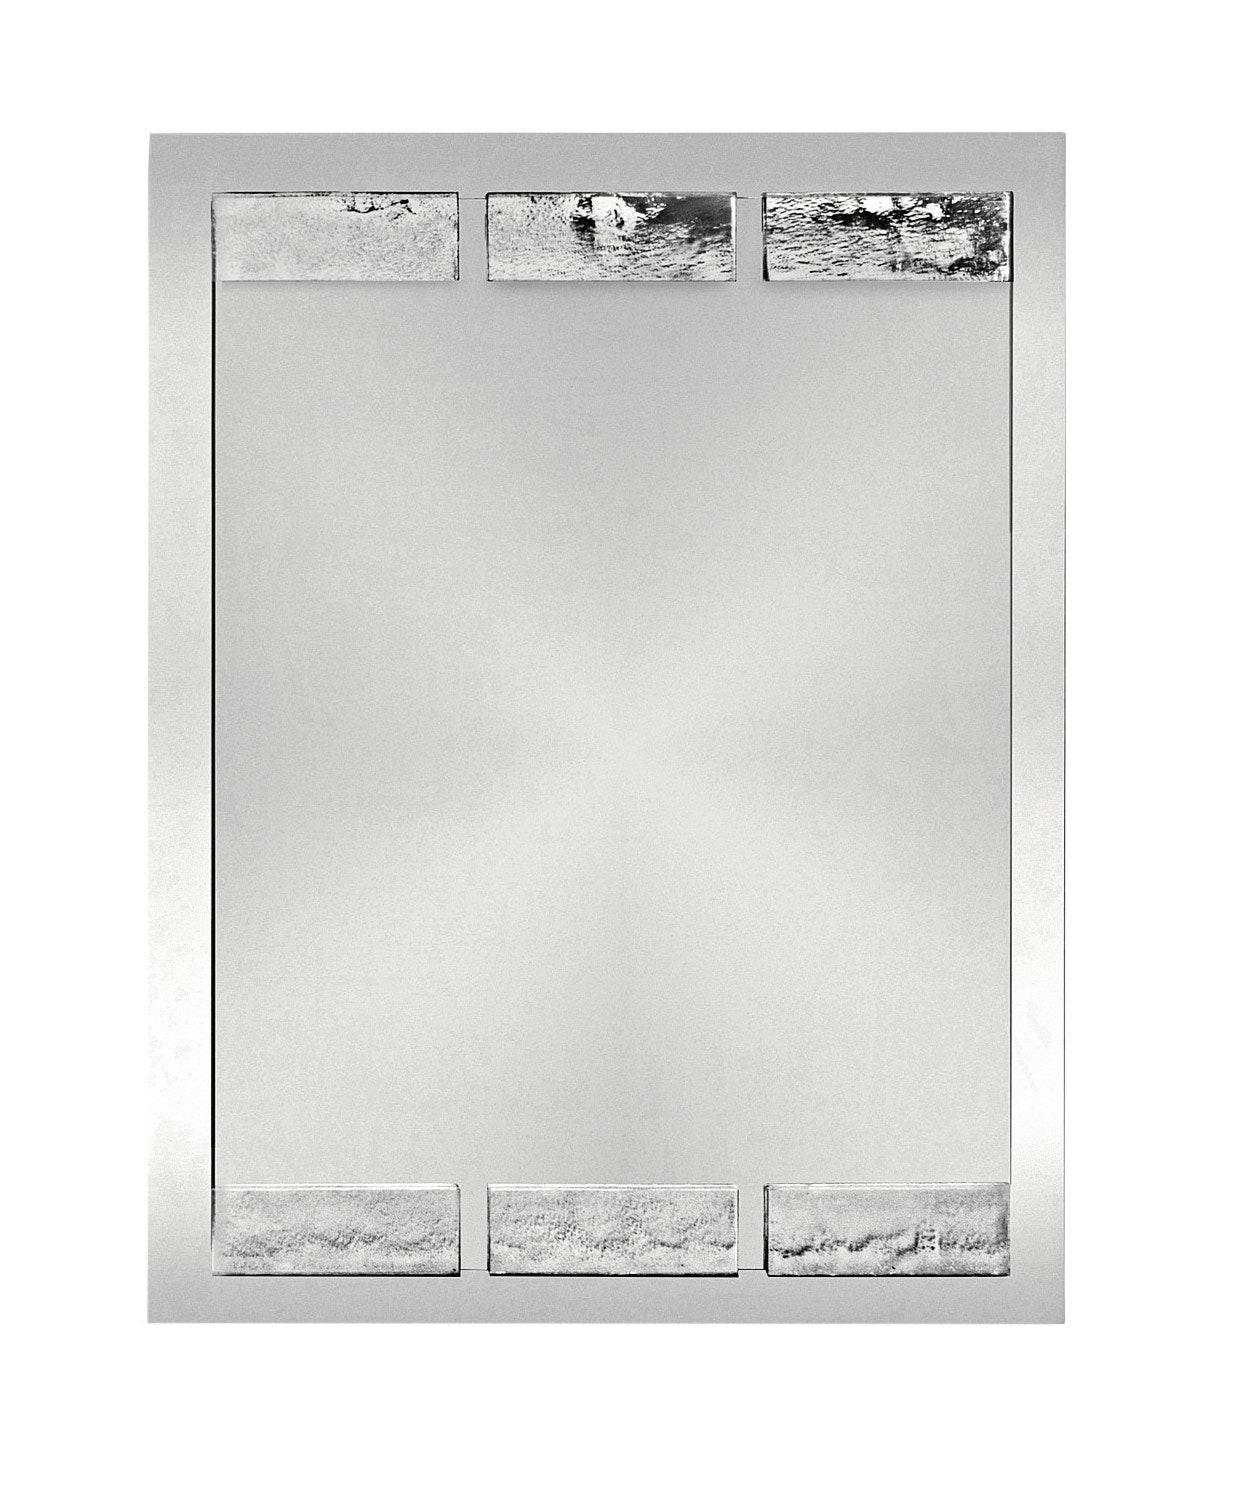 Зеркало из коллекции Gonfalone как и комод украшено шестью пластинами муранского стекла.